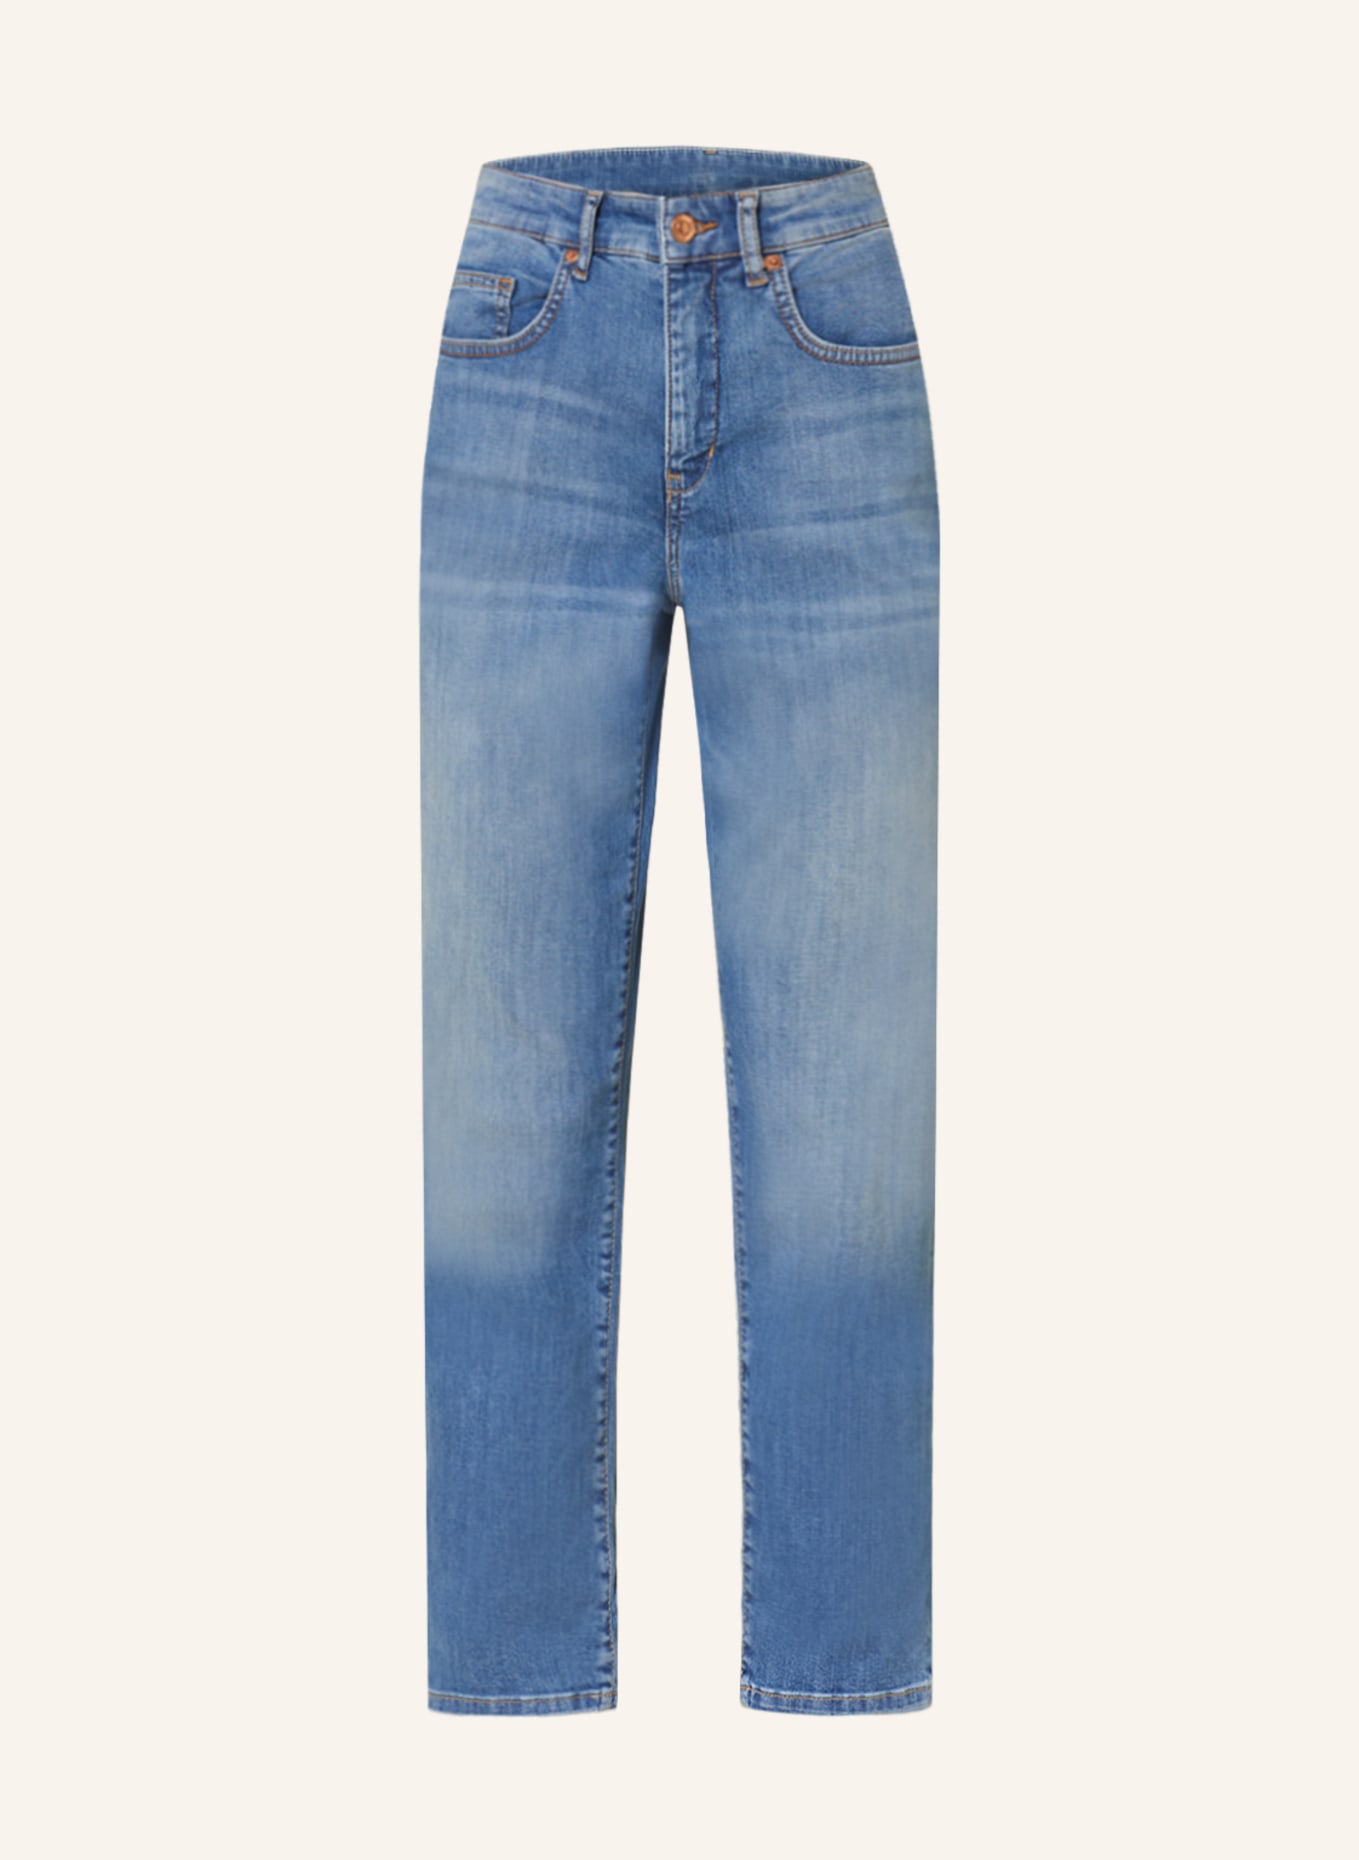 MAC Mom Jeans CAROL, Farbe: D557 used mid blue (Bild 1)